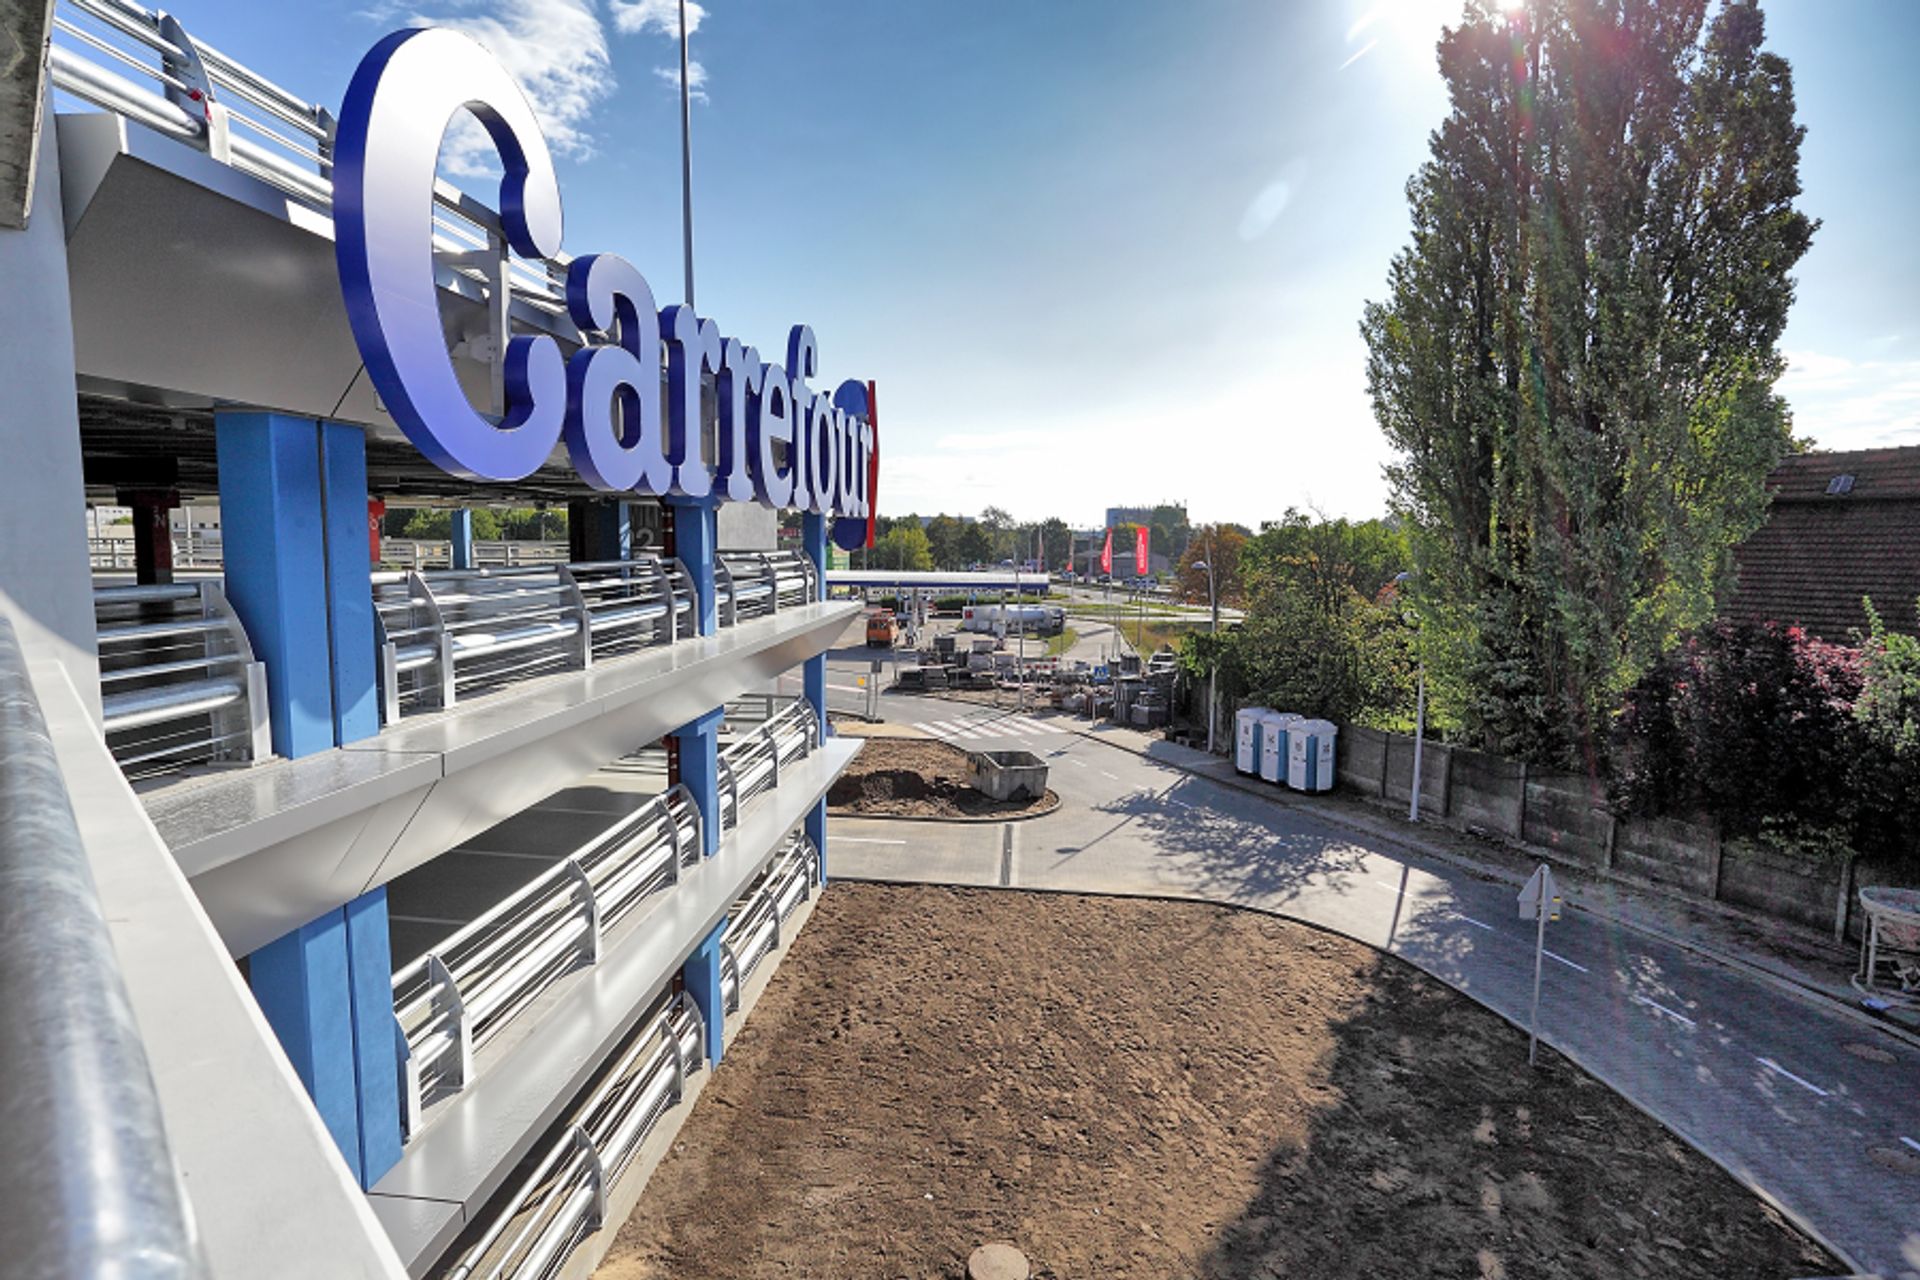  Największy parking przy centrum handlowym w Bydgoszczy już działa